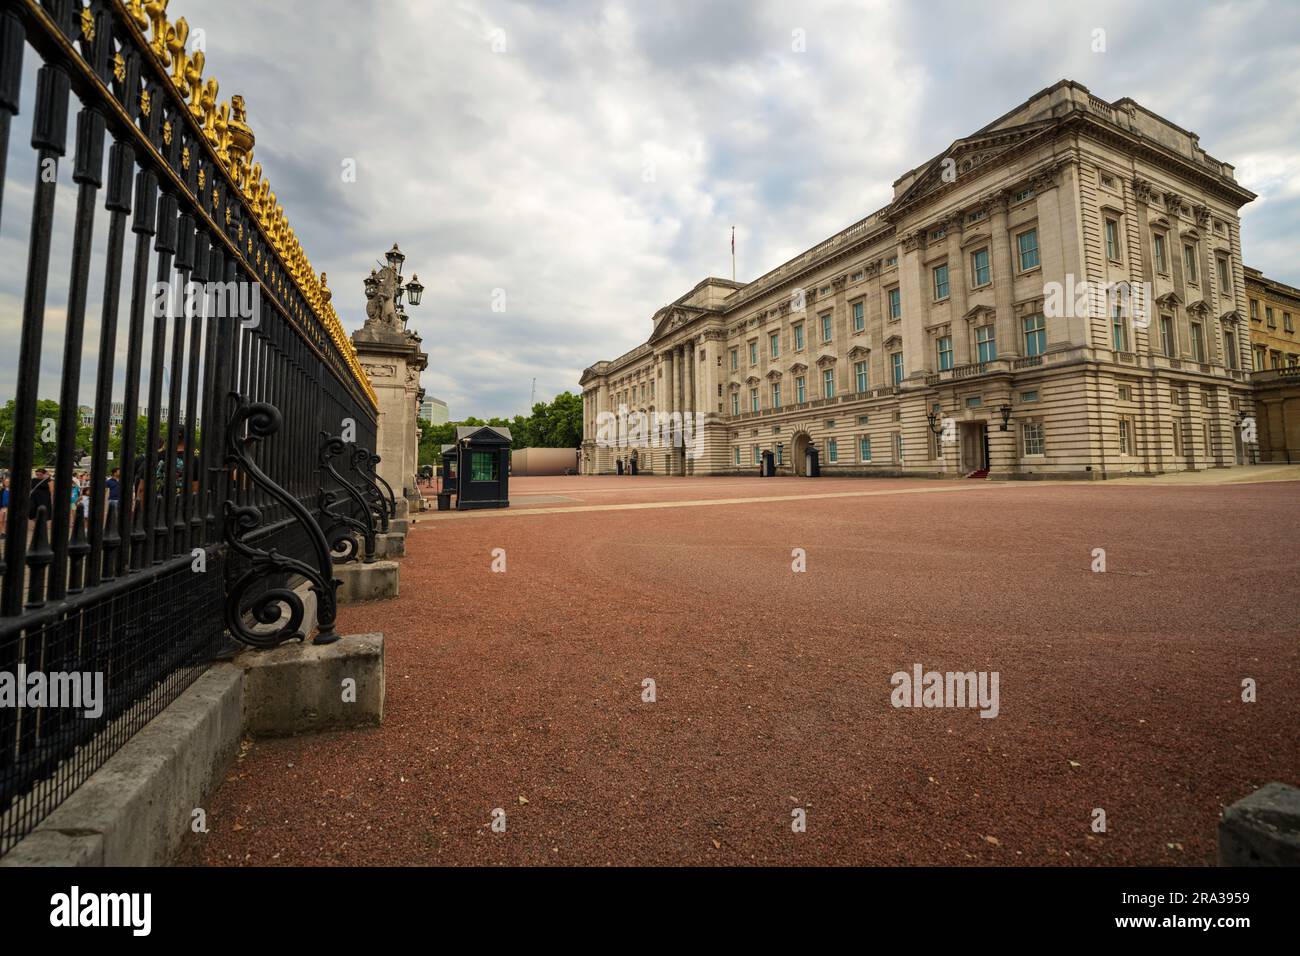 Les touristes devant la porte du palais de Buckingham et les gardes du palais à l'entrée. Un symbole de la monarchie britannique et la maison des rois, des reines. Faites le tour. Banque D'Images